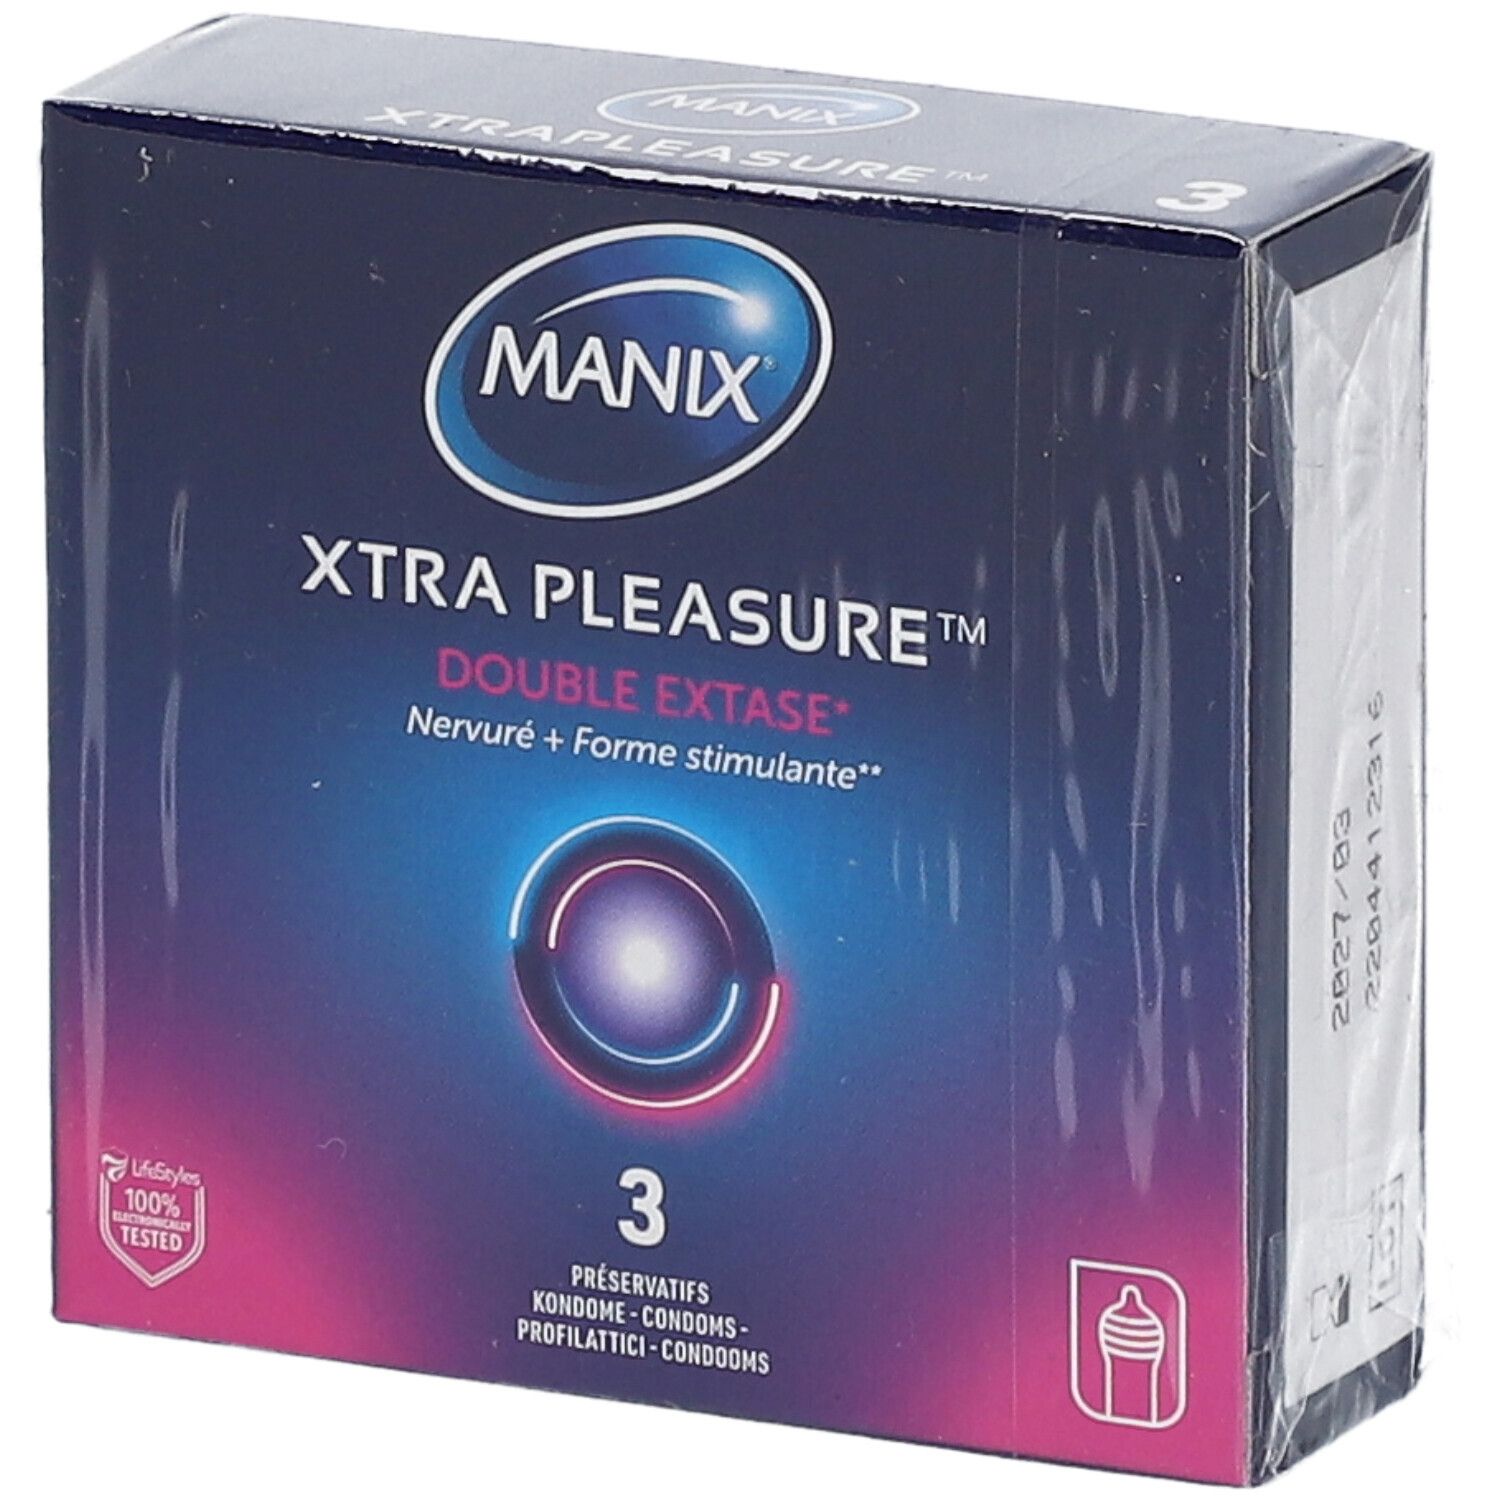 Manix® Xtra pleasure®